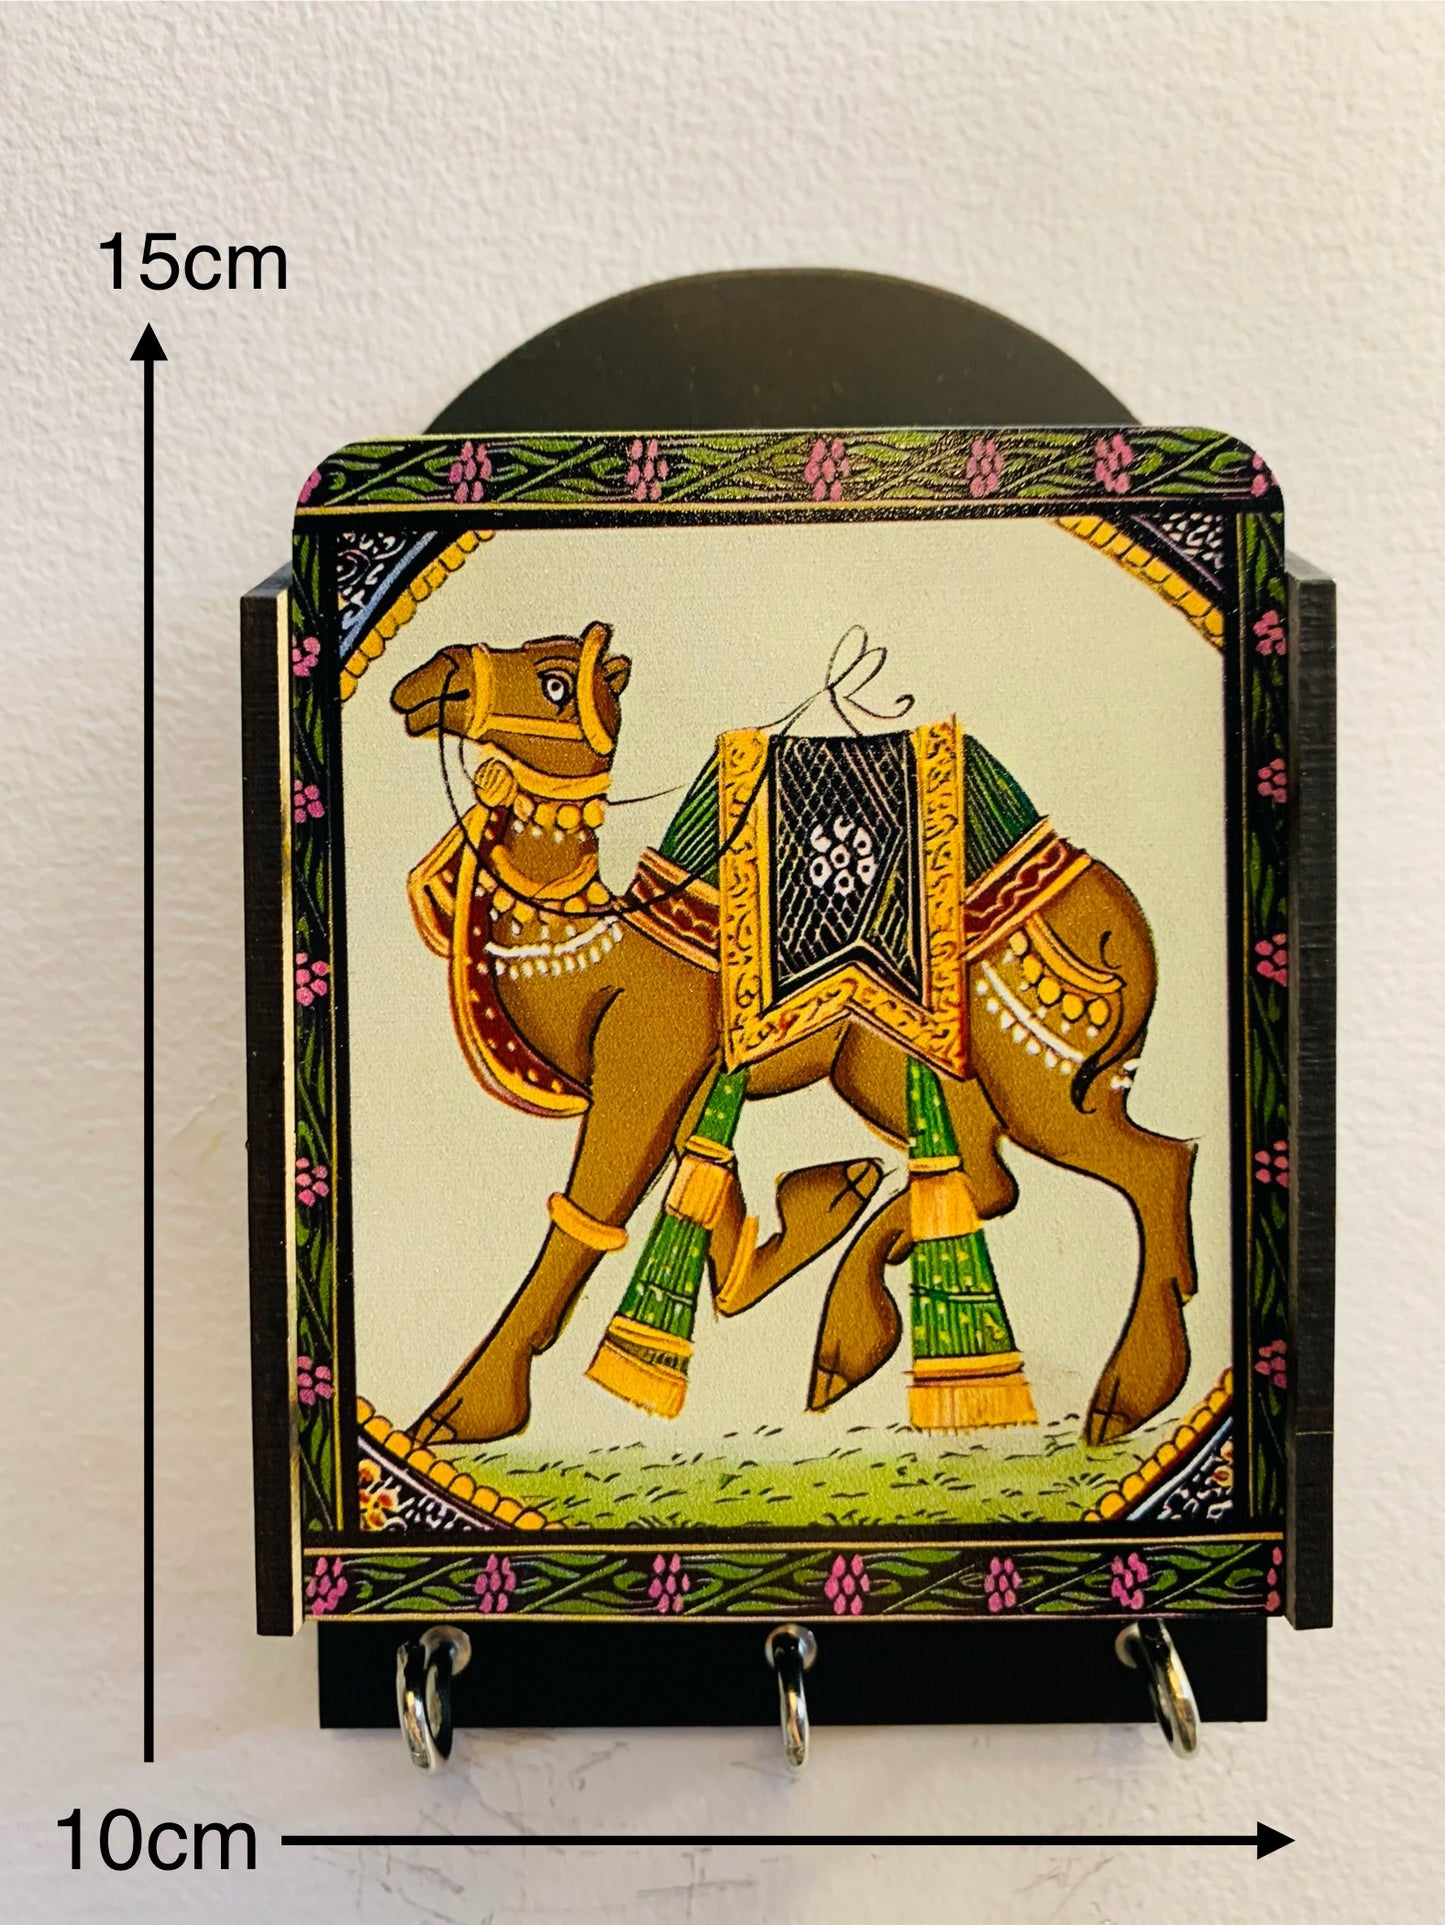 Chandni collection camel design keyholder/penholder